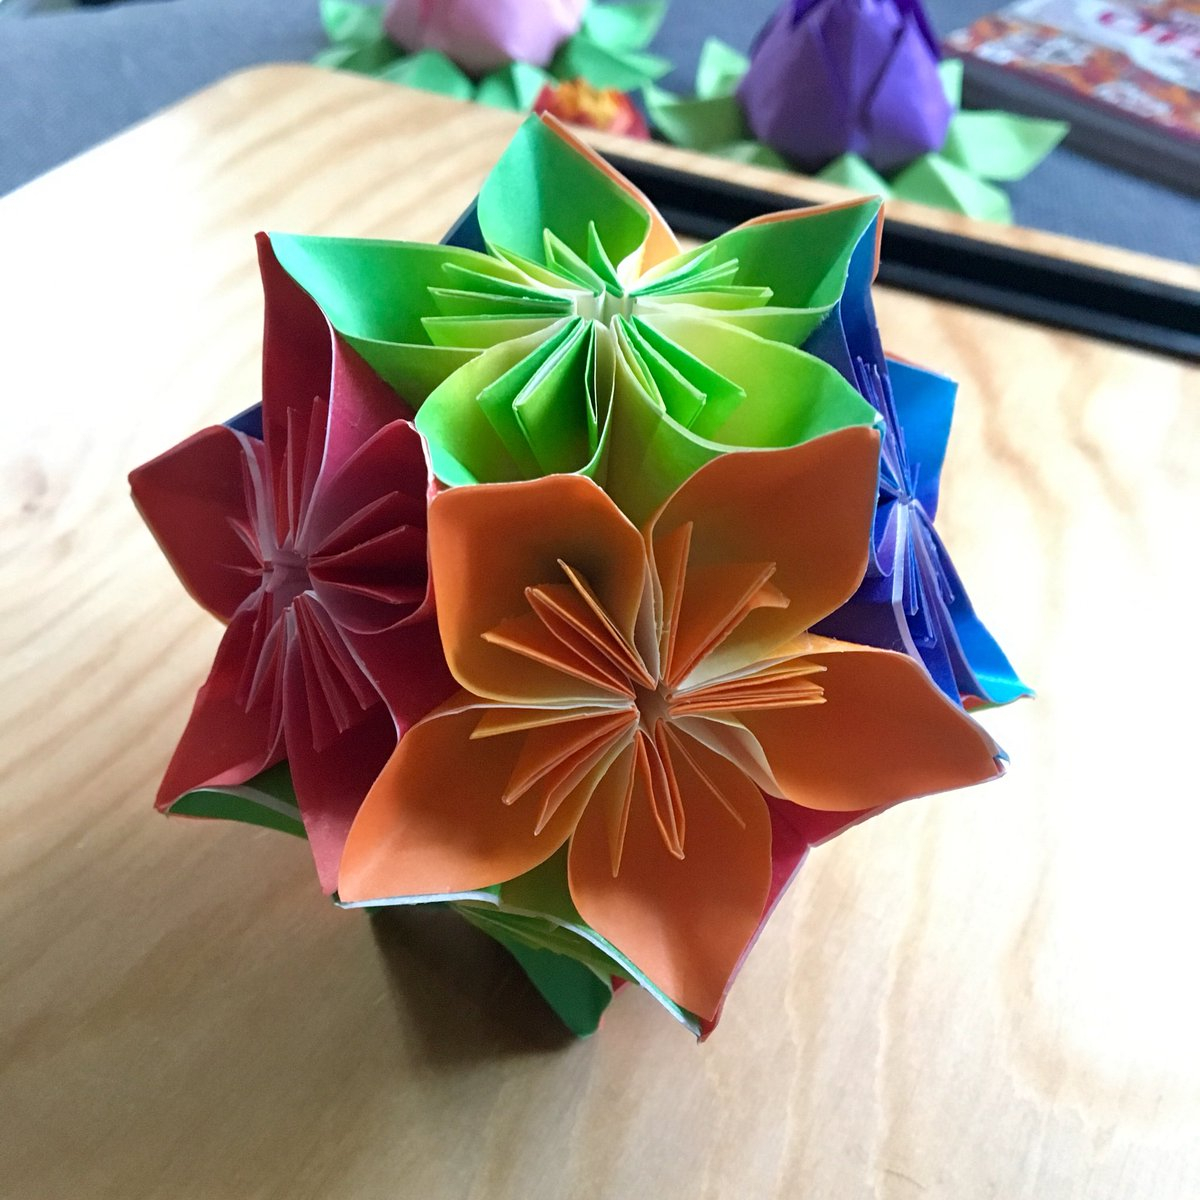 Harmony Origami Paper Clarissa Grandi On Twitter All Done Pretty Little Four Colour